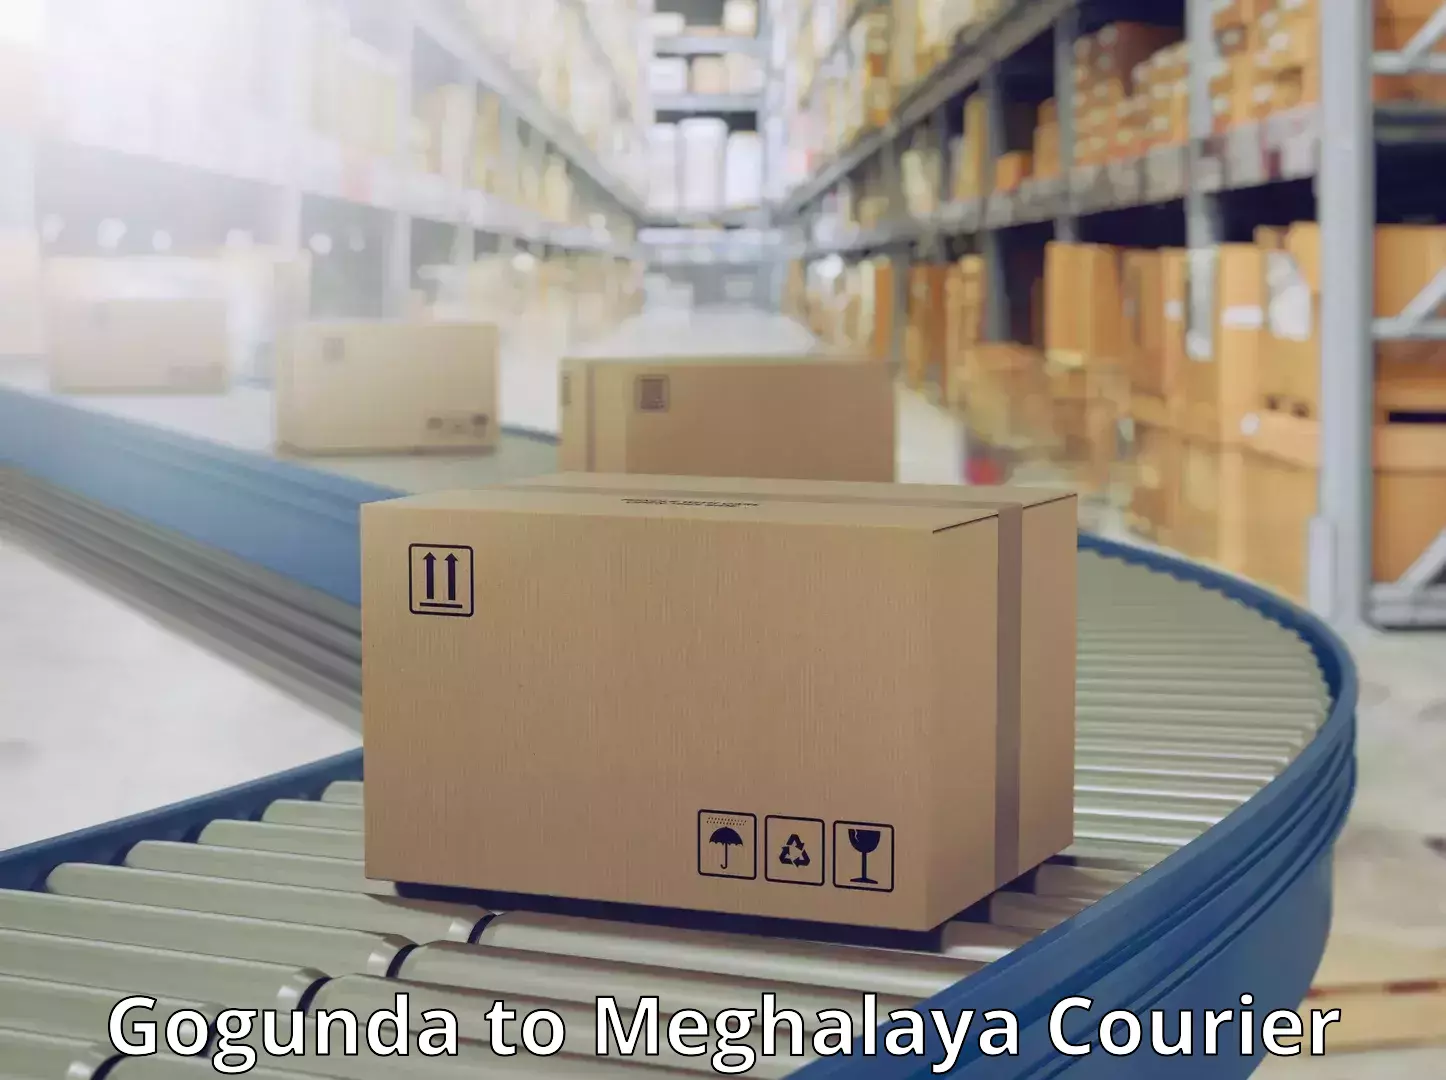 Expedited shipping methods Gogunda to Meghalaya